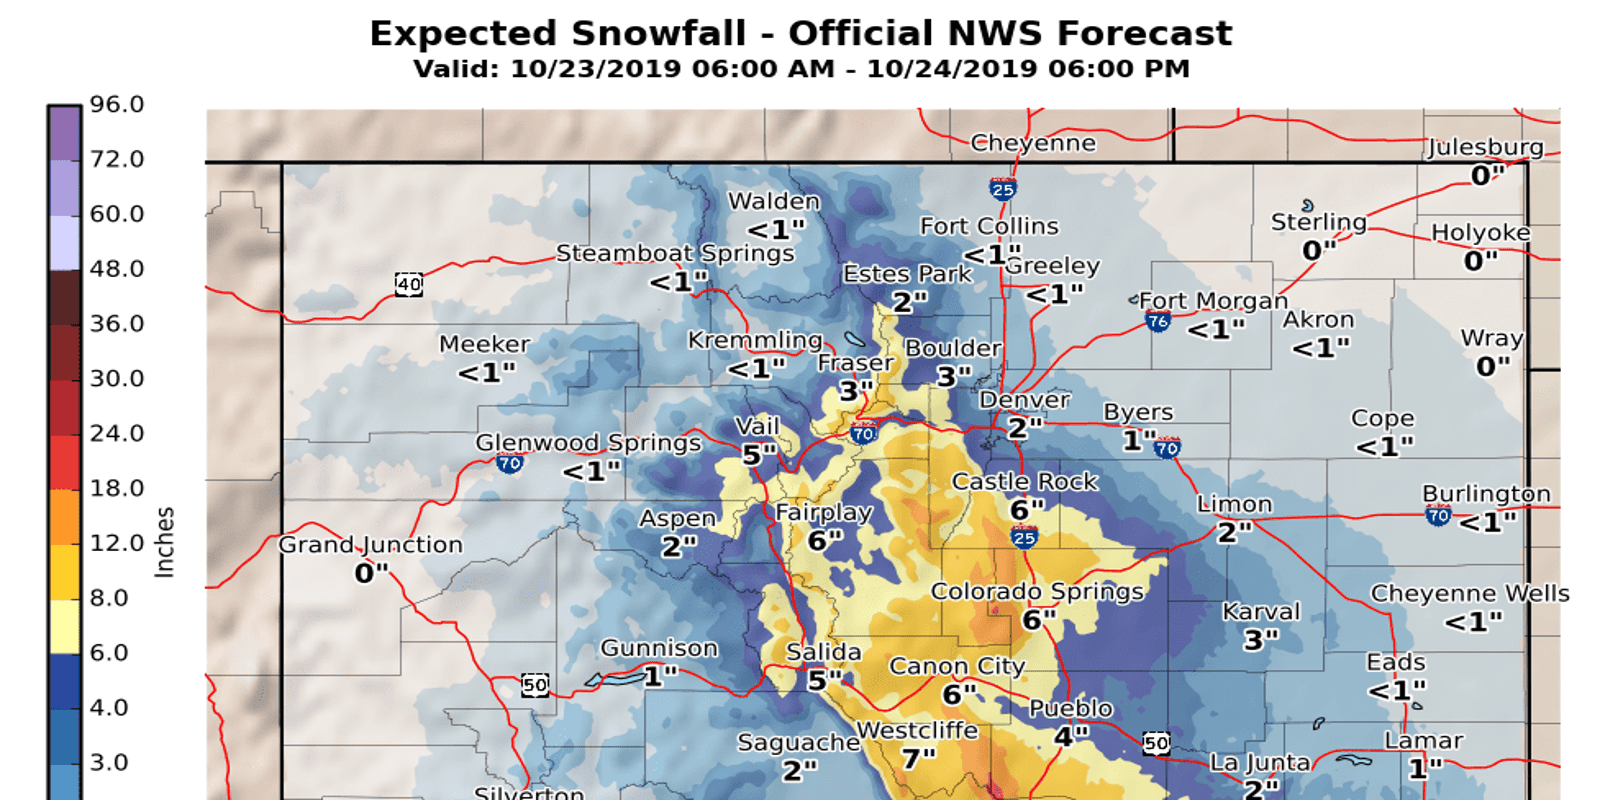 Forecast snow totals for Colorado's next storm